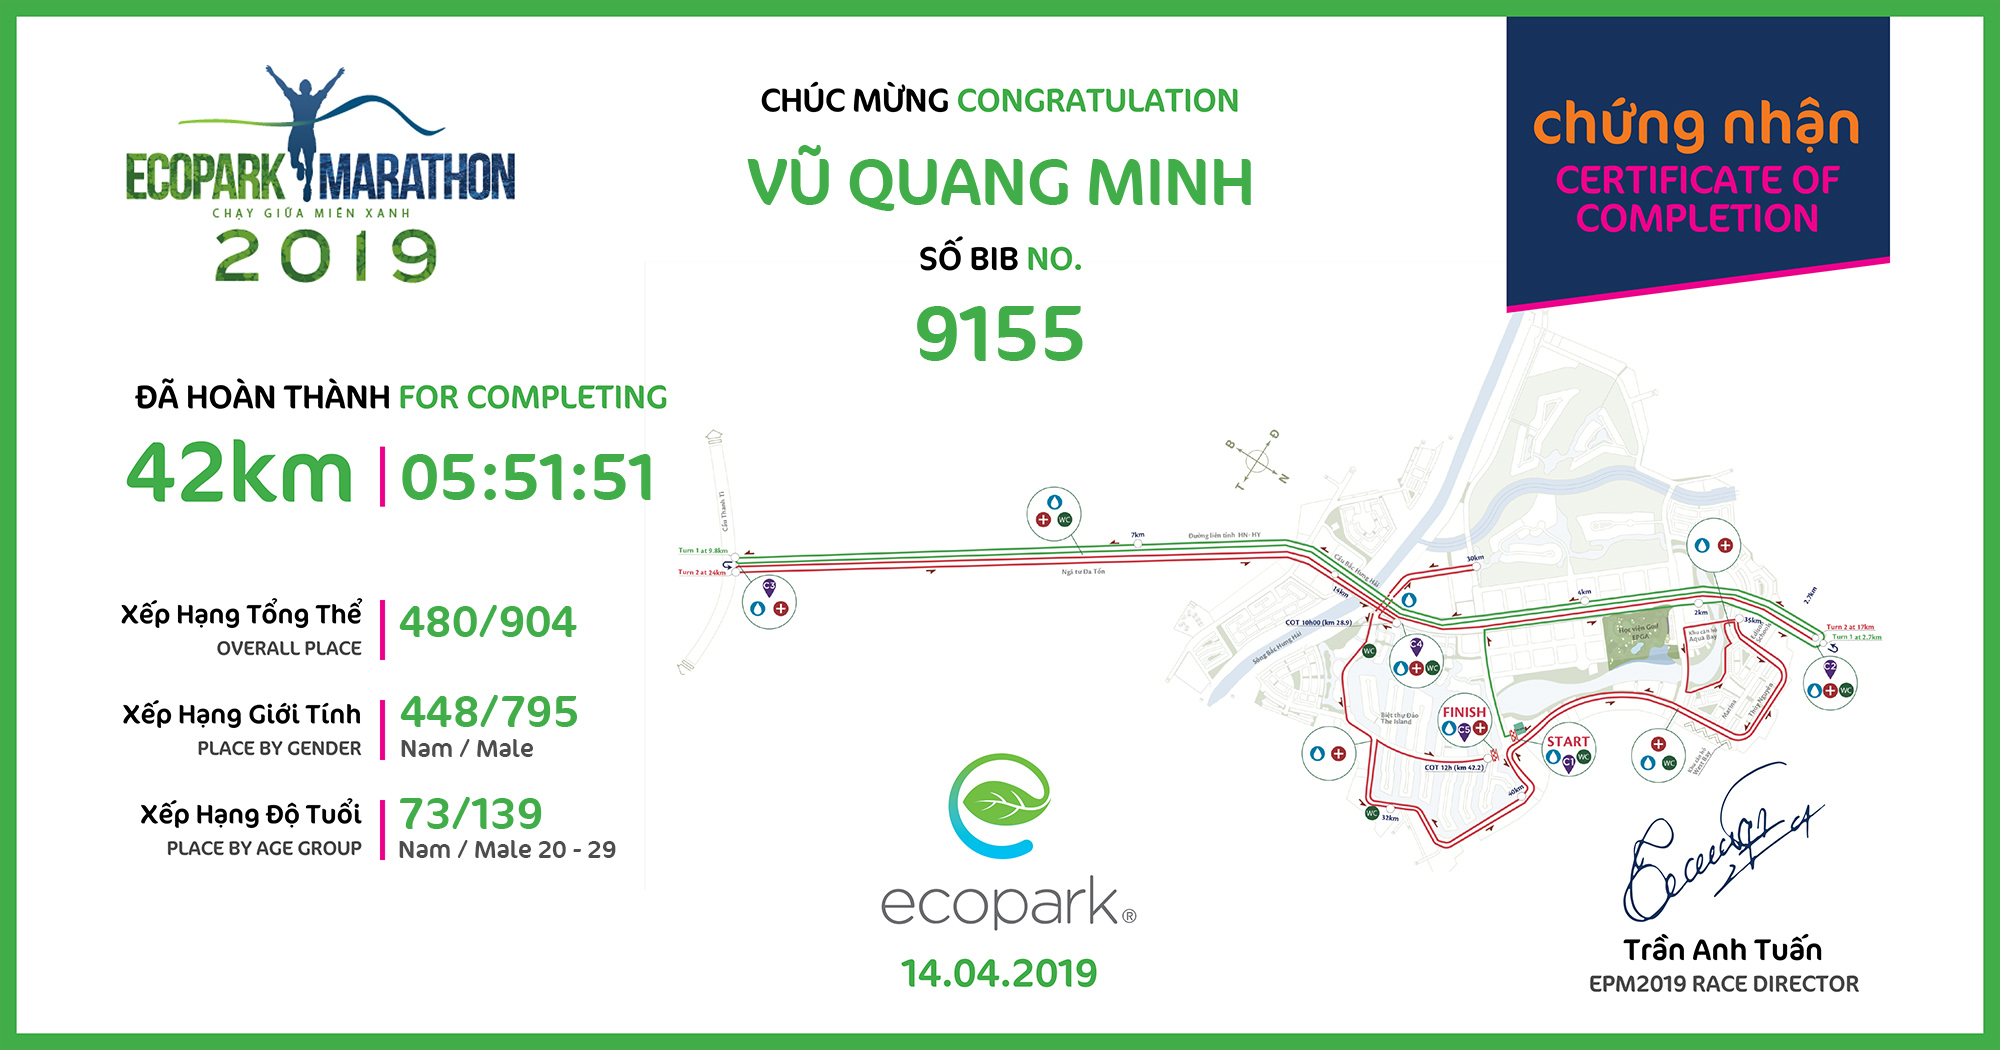 9155 - Vũ Quang Minh